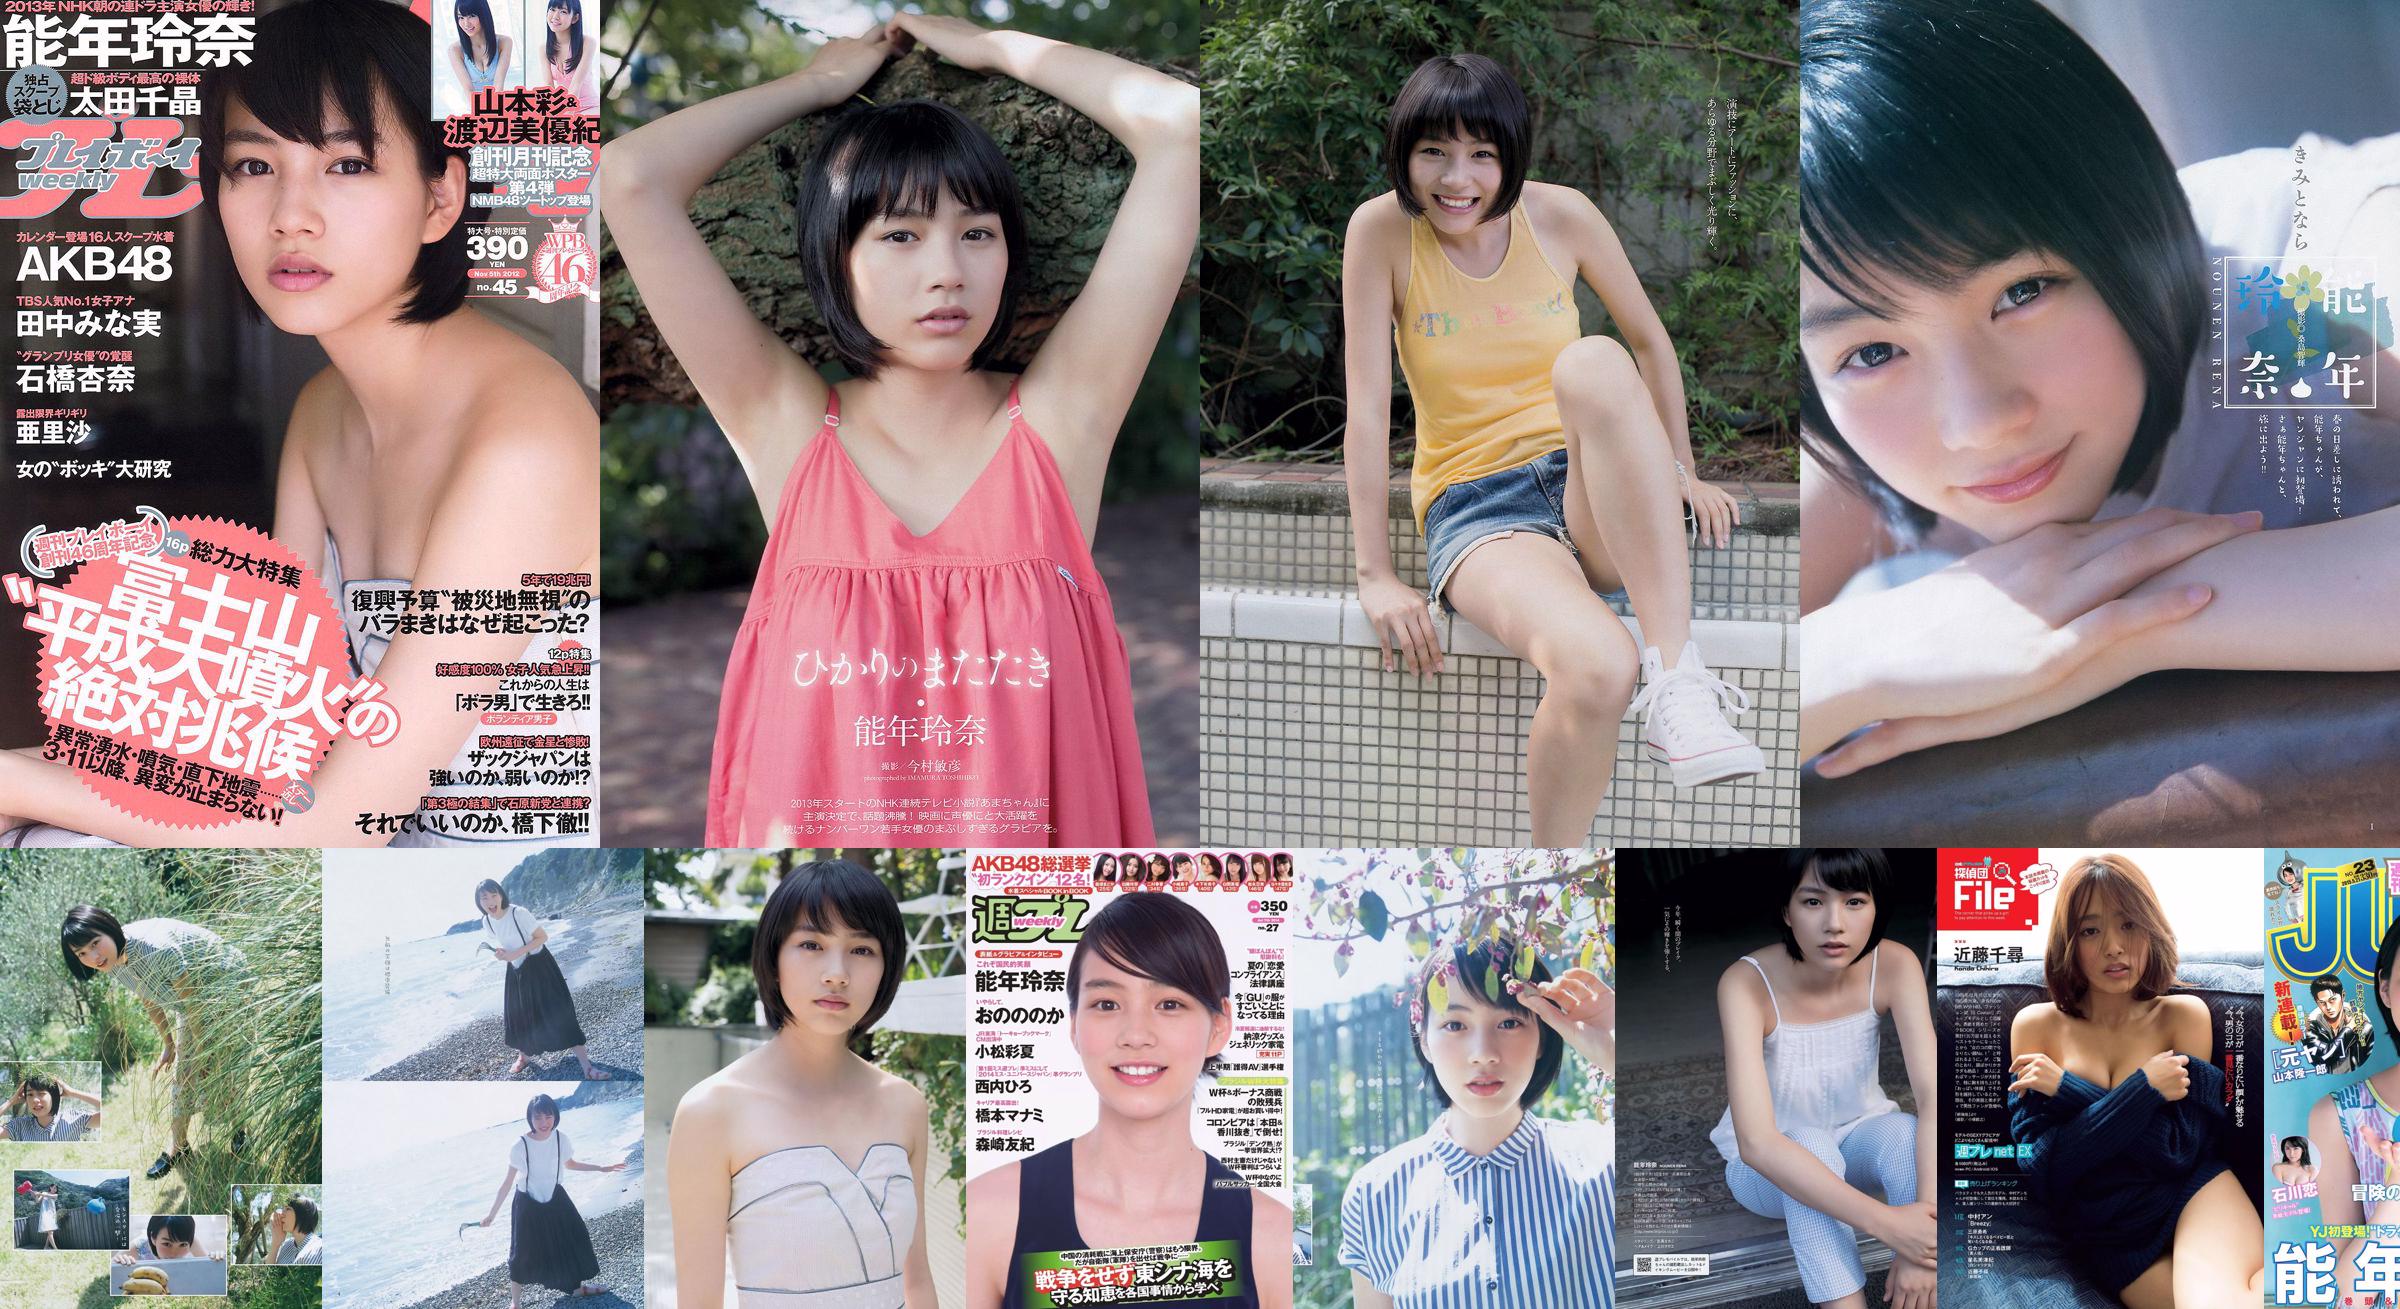 Rena Nonen AKB48 Anna Ishibashi Arisa Ili Chiaki Ota [Playboy Mingguan] 2012 No.45 Foto No.0fa983 Halaman 7